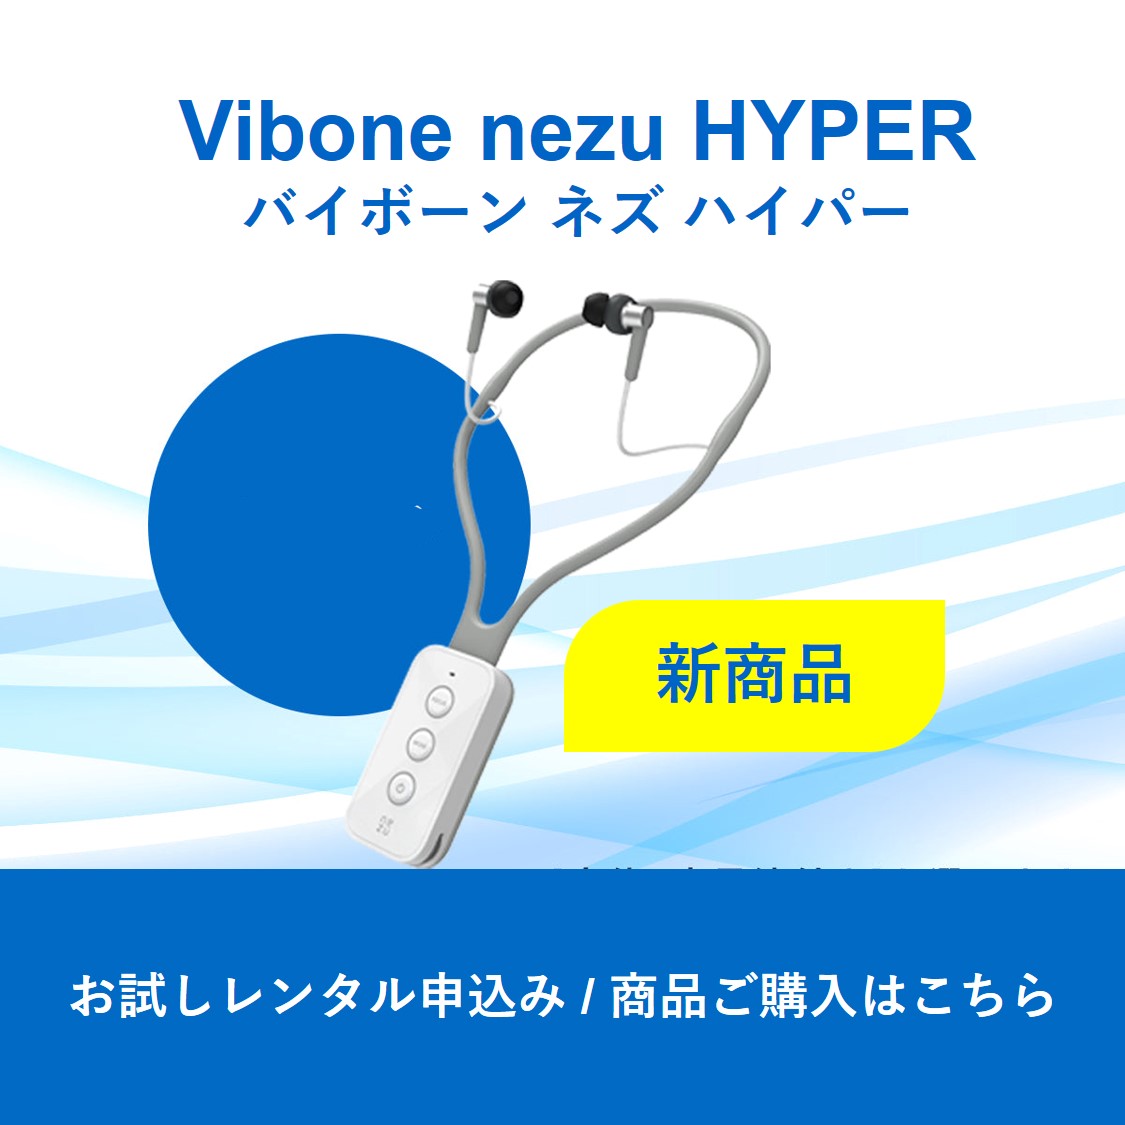 新商品】骨伝導集音器「Vibone nezu HYPER」ALL ITEM | Solidsonic